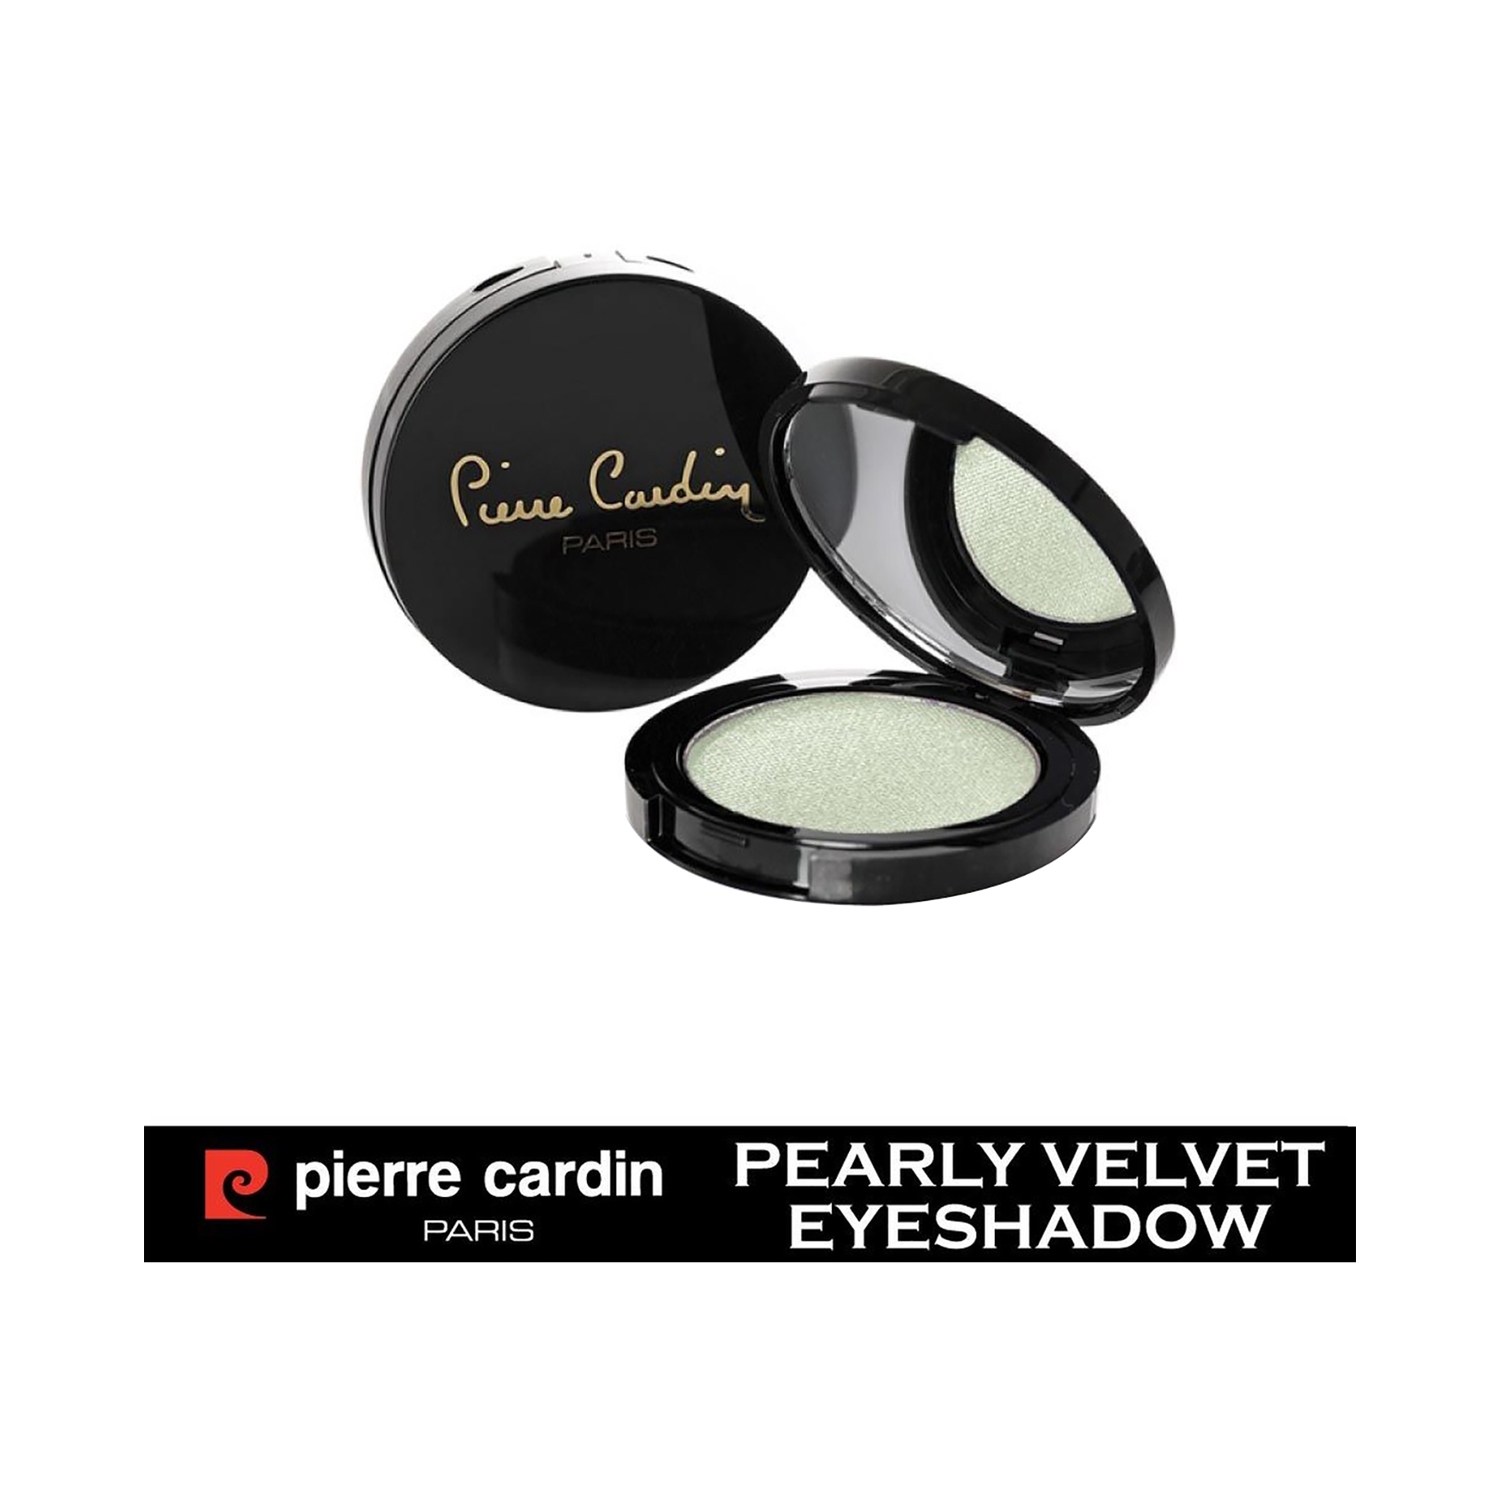 Pierre Cardin Paris | Pierre Cardin Paris Pearly Velvet Eye Shadow - 480 Mint Green (4g)